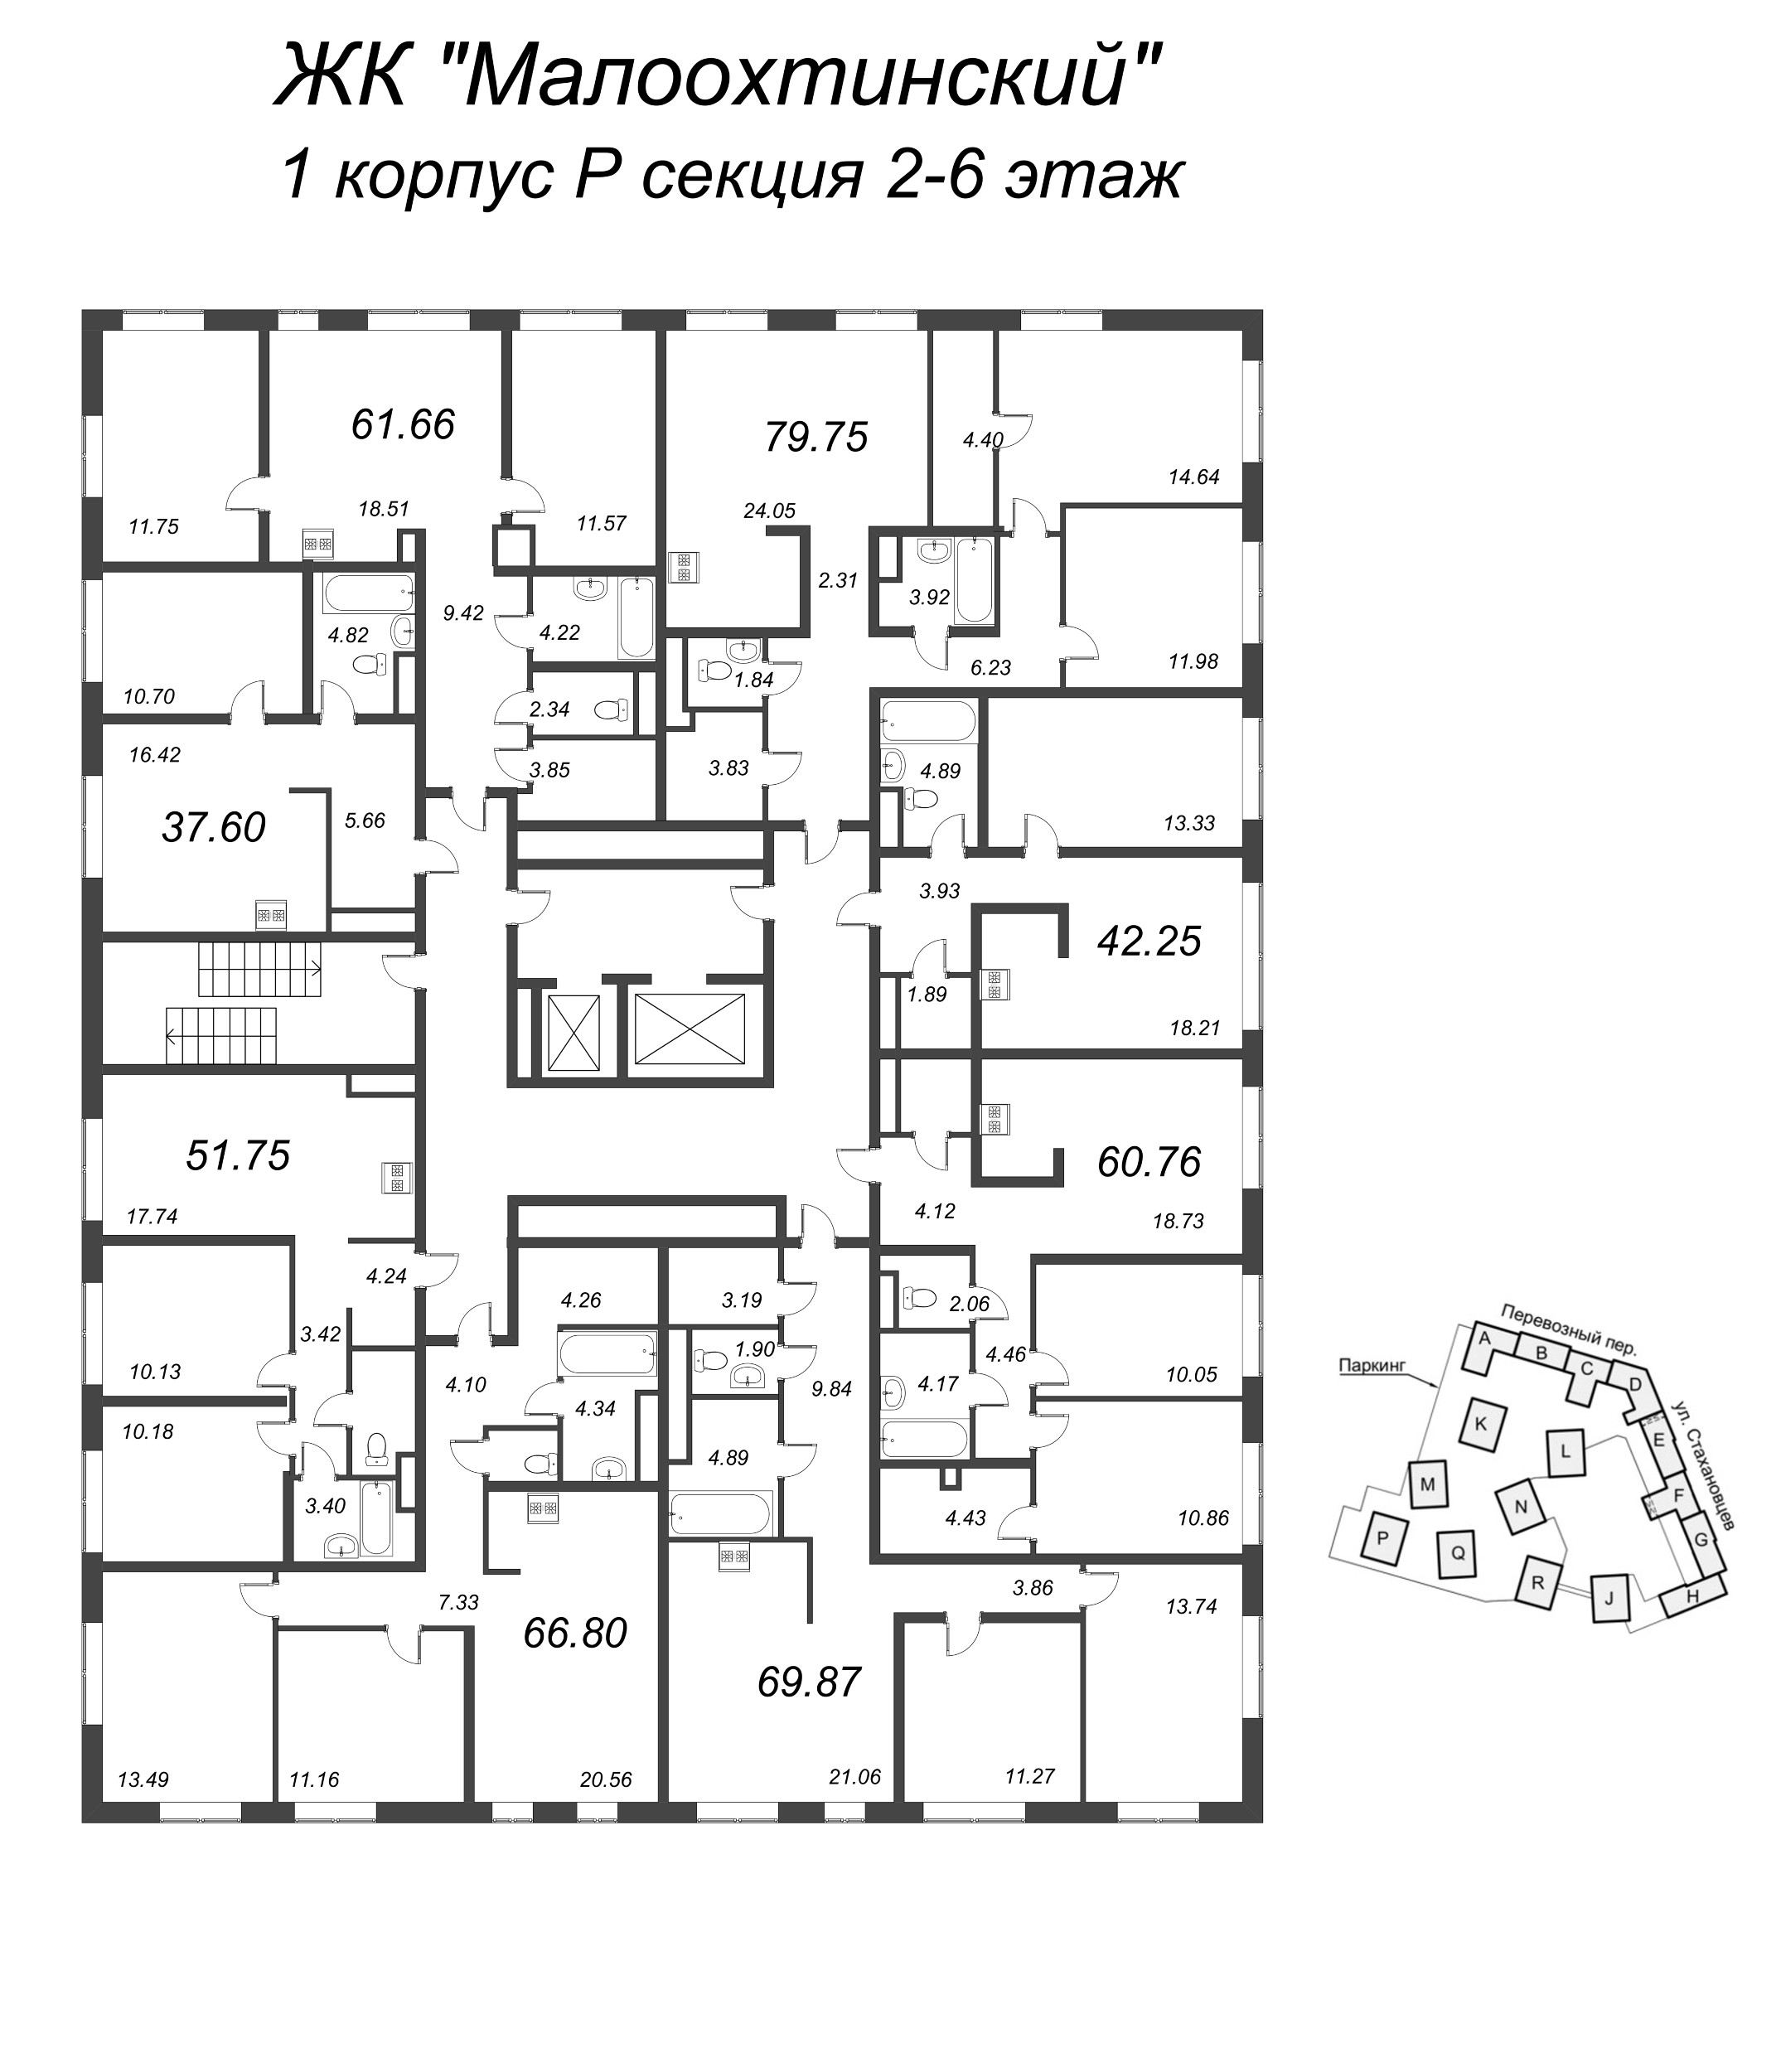 3-комнатная (Евро) квартира, 71.8 м² в ЖК "Малоохтинский, 68" - планировка этажа